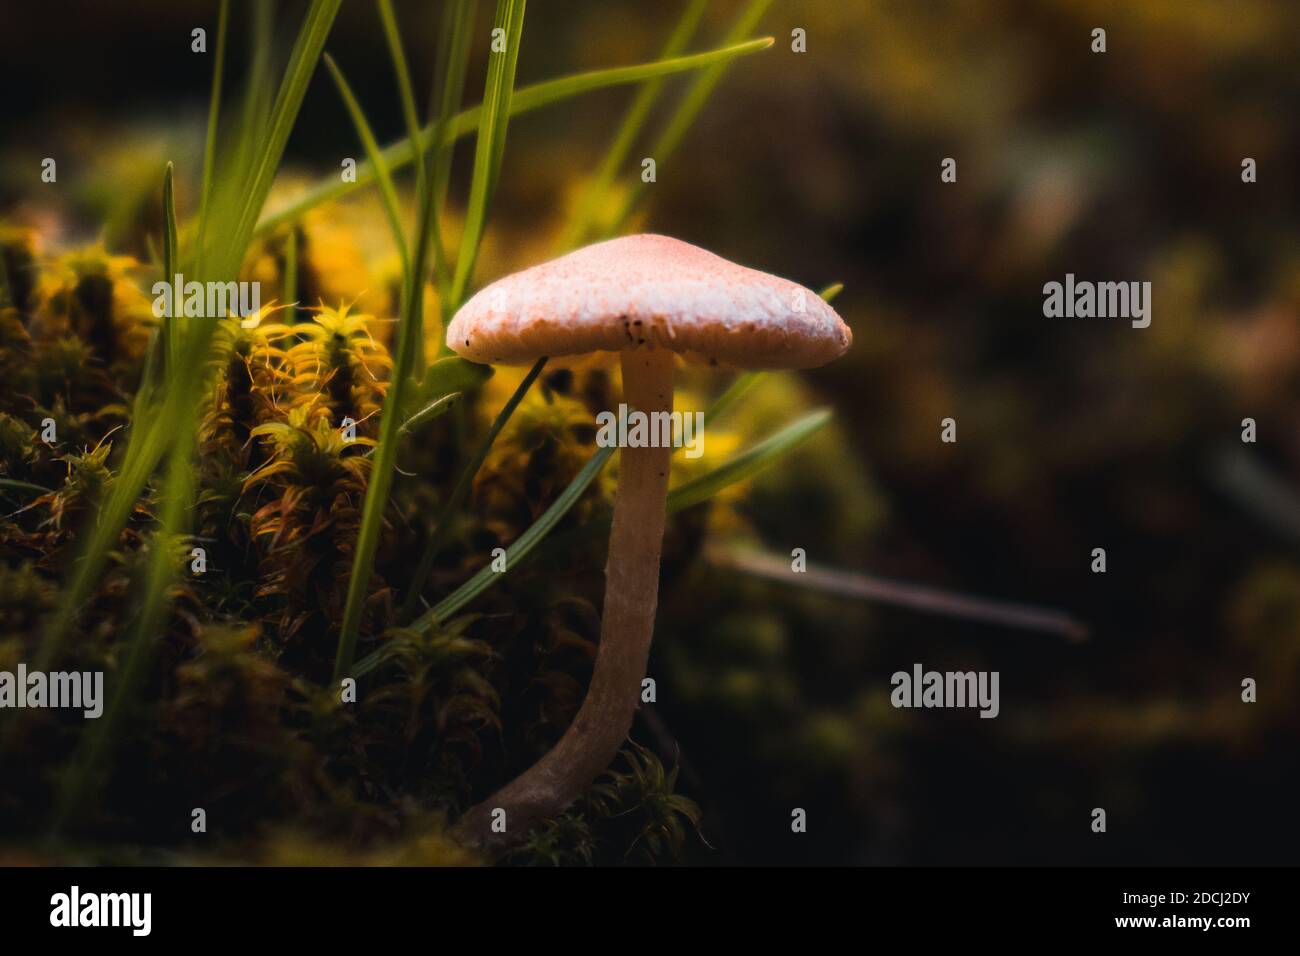 mushroom in moss Stock Photo